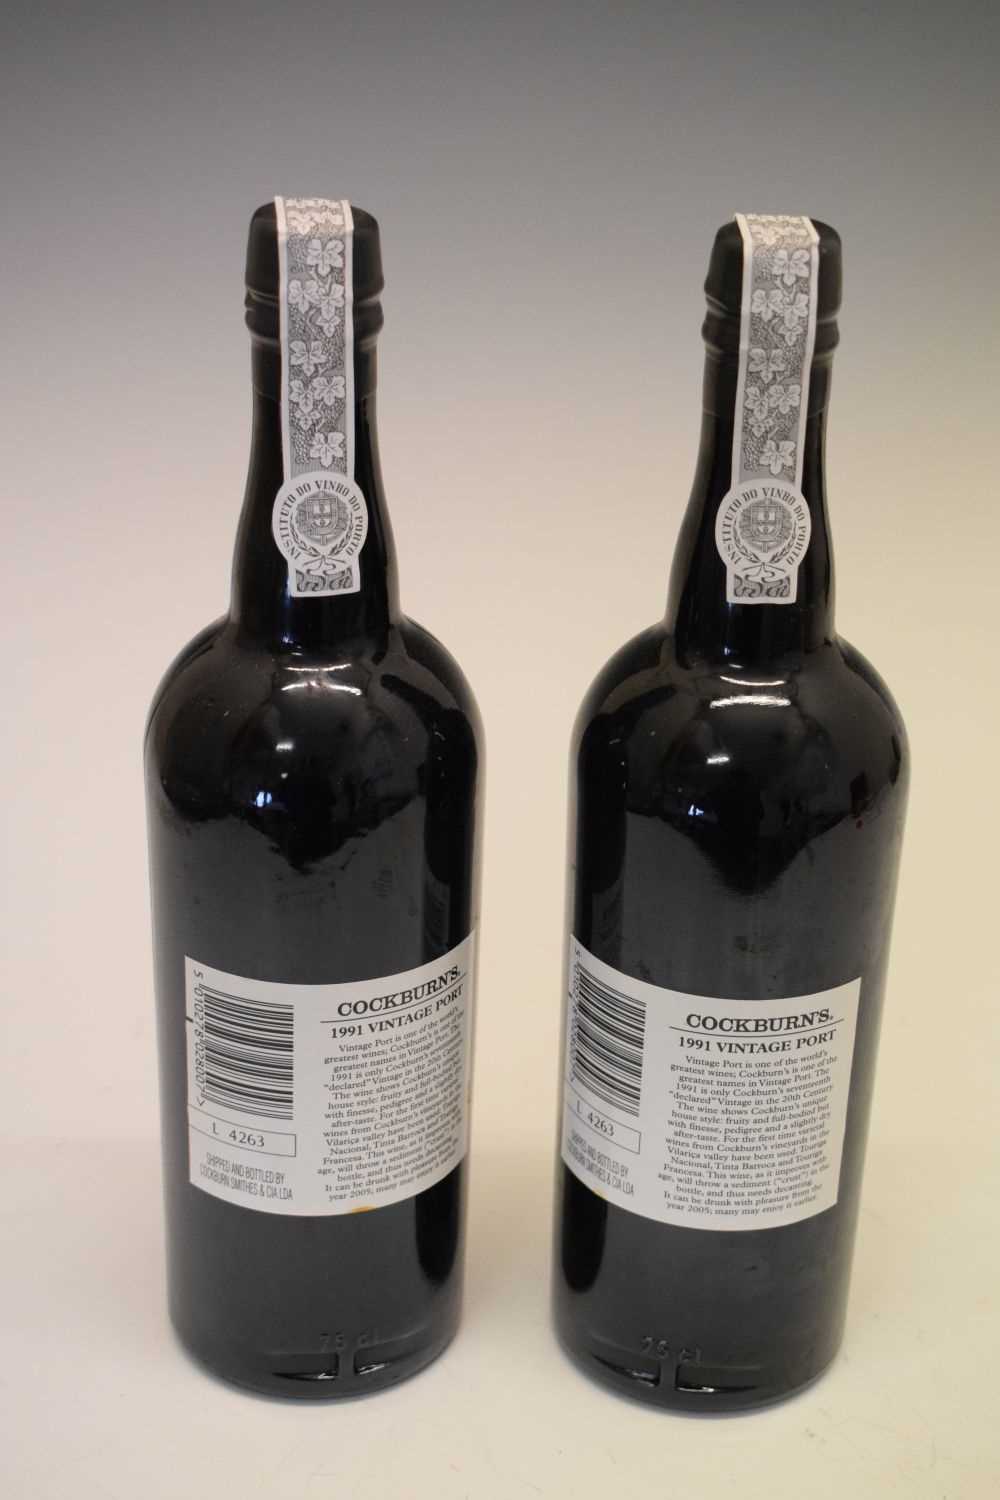 Two bottles of Cockburn's Vintage Port, 1991 - Image 4 of 6